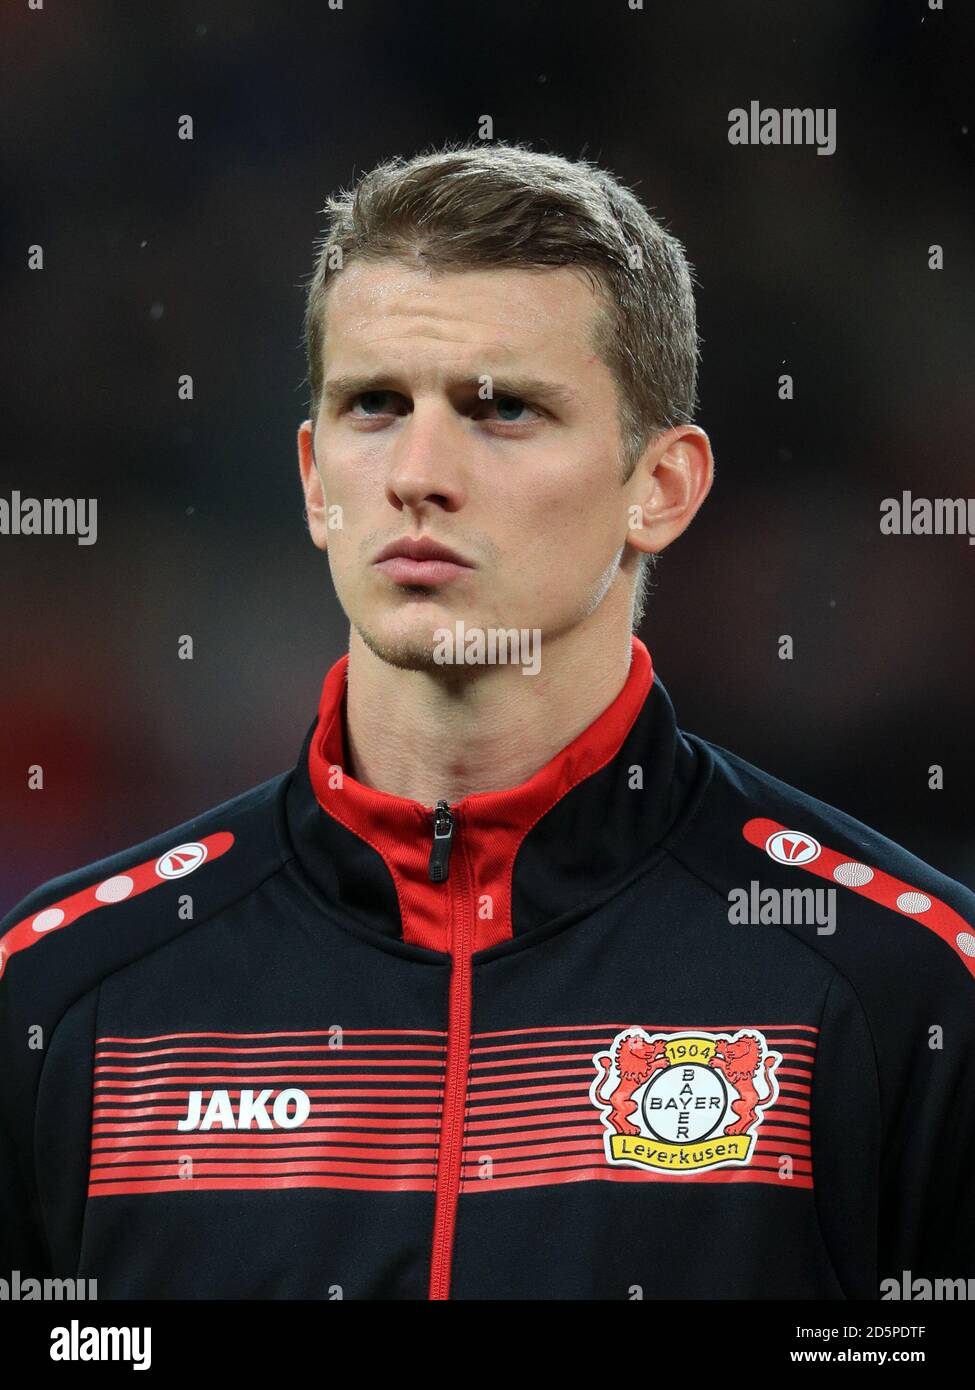 Bayer Leverkusen's Lars Bender Stock Photo